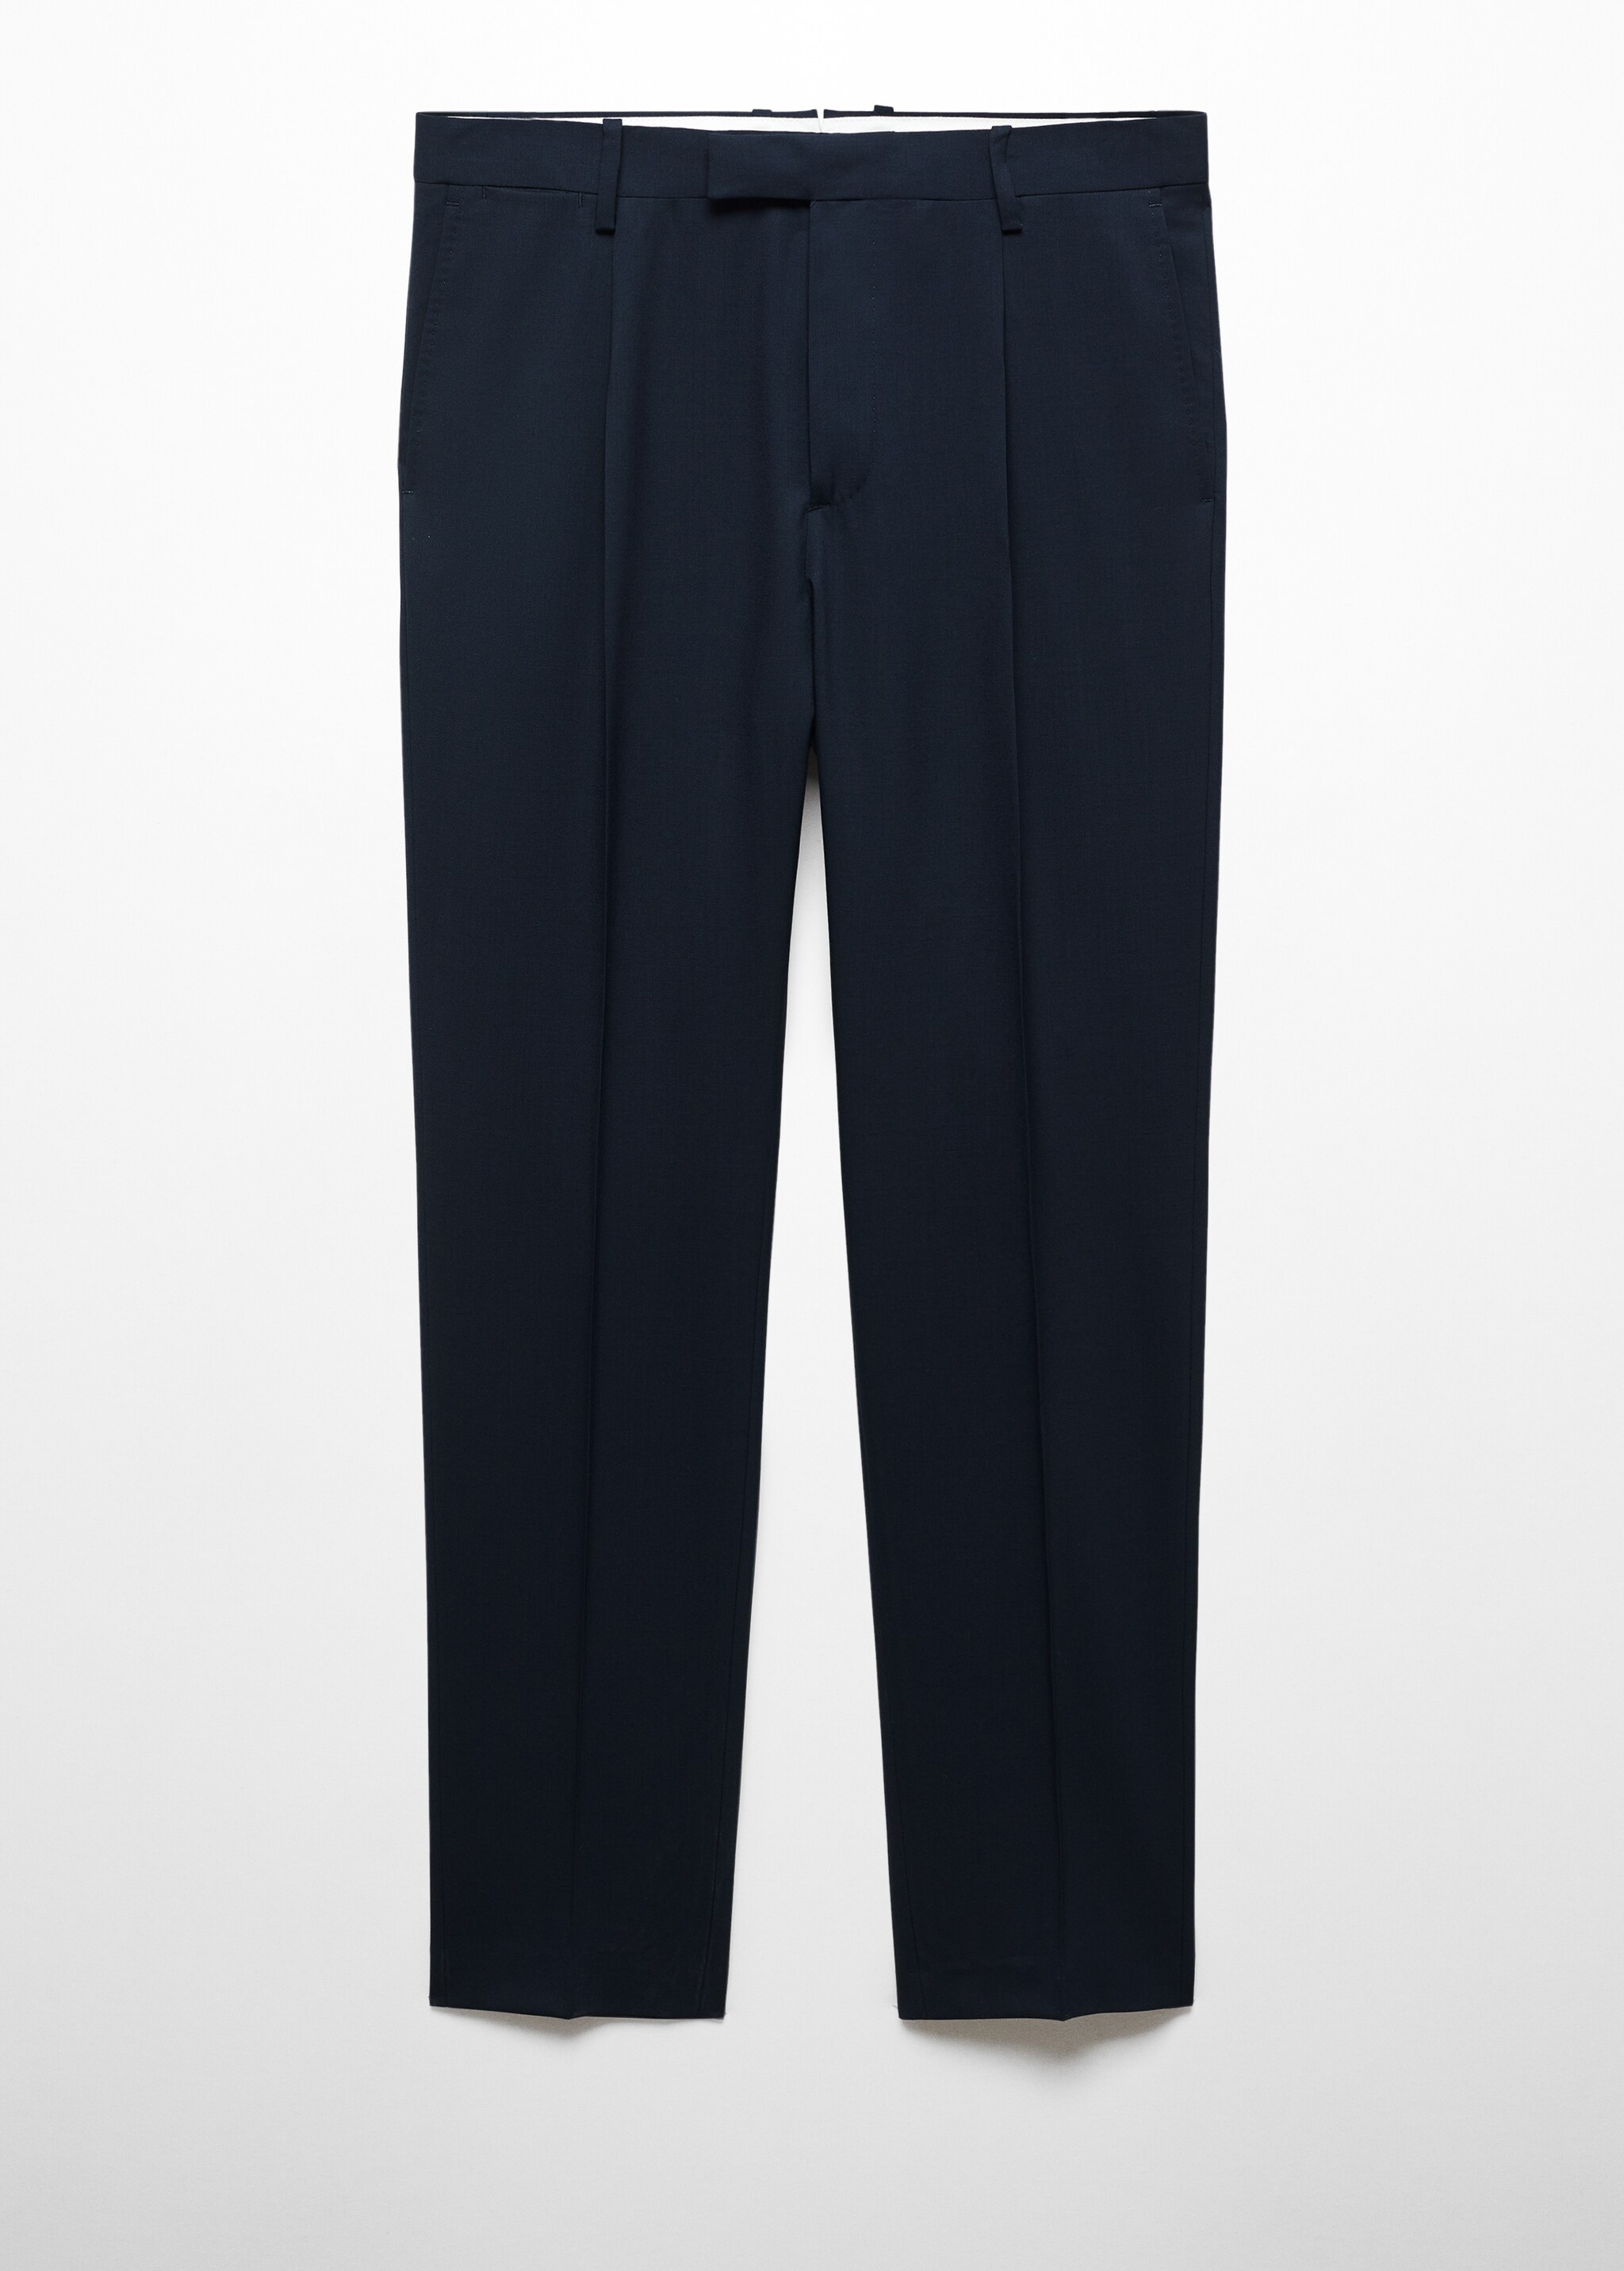 Pantaloni completo slim-fit 100% lana vergine - Articolo senza modello